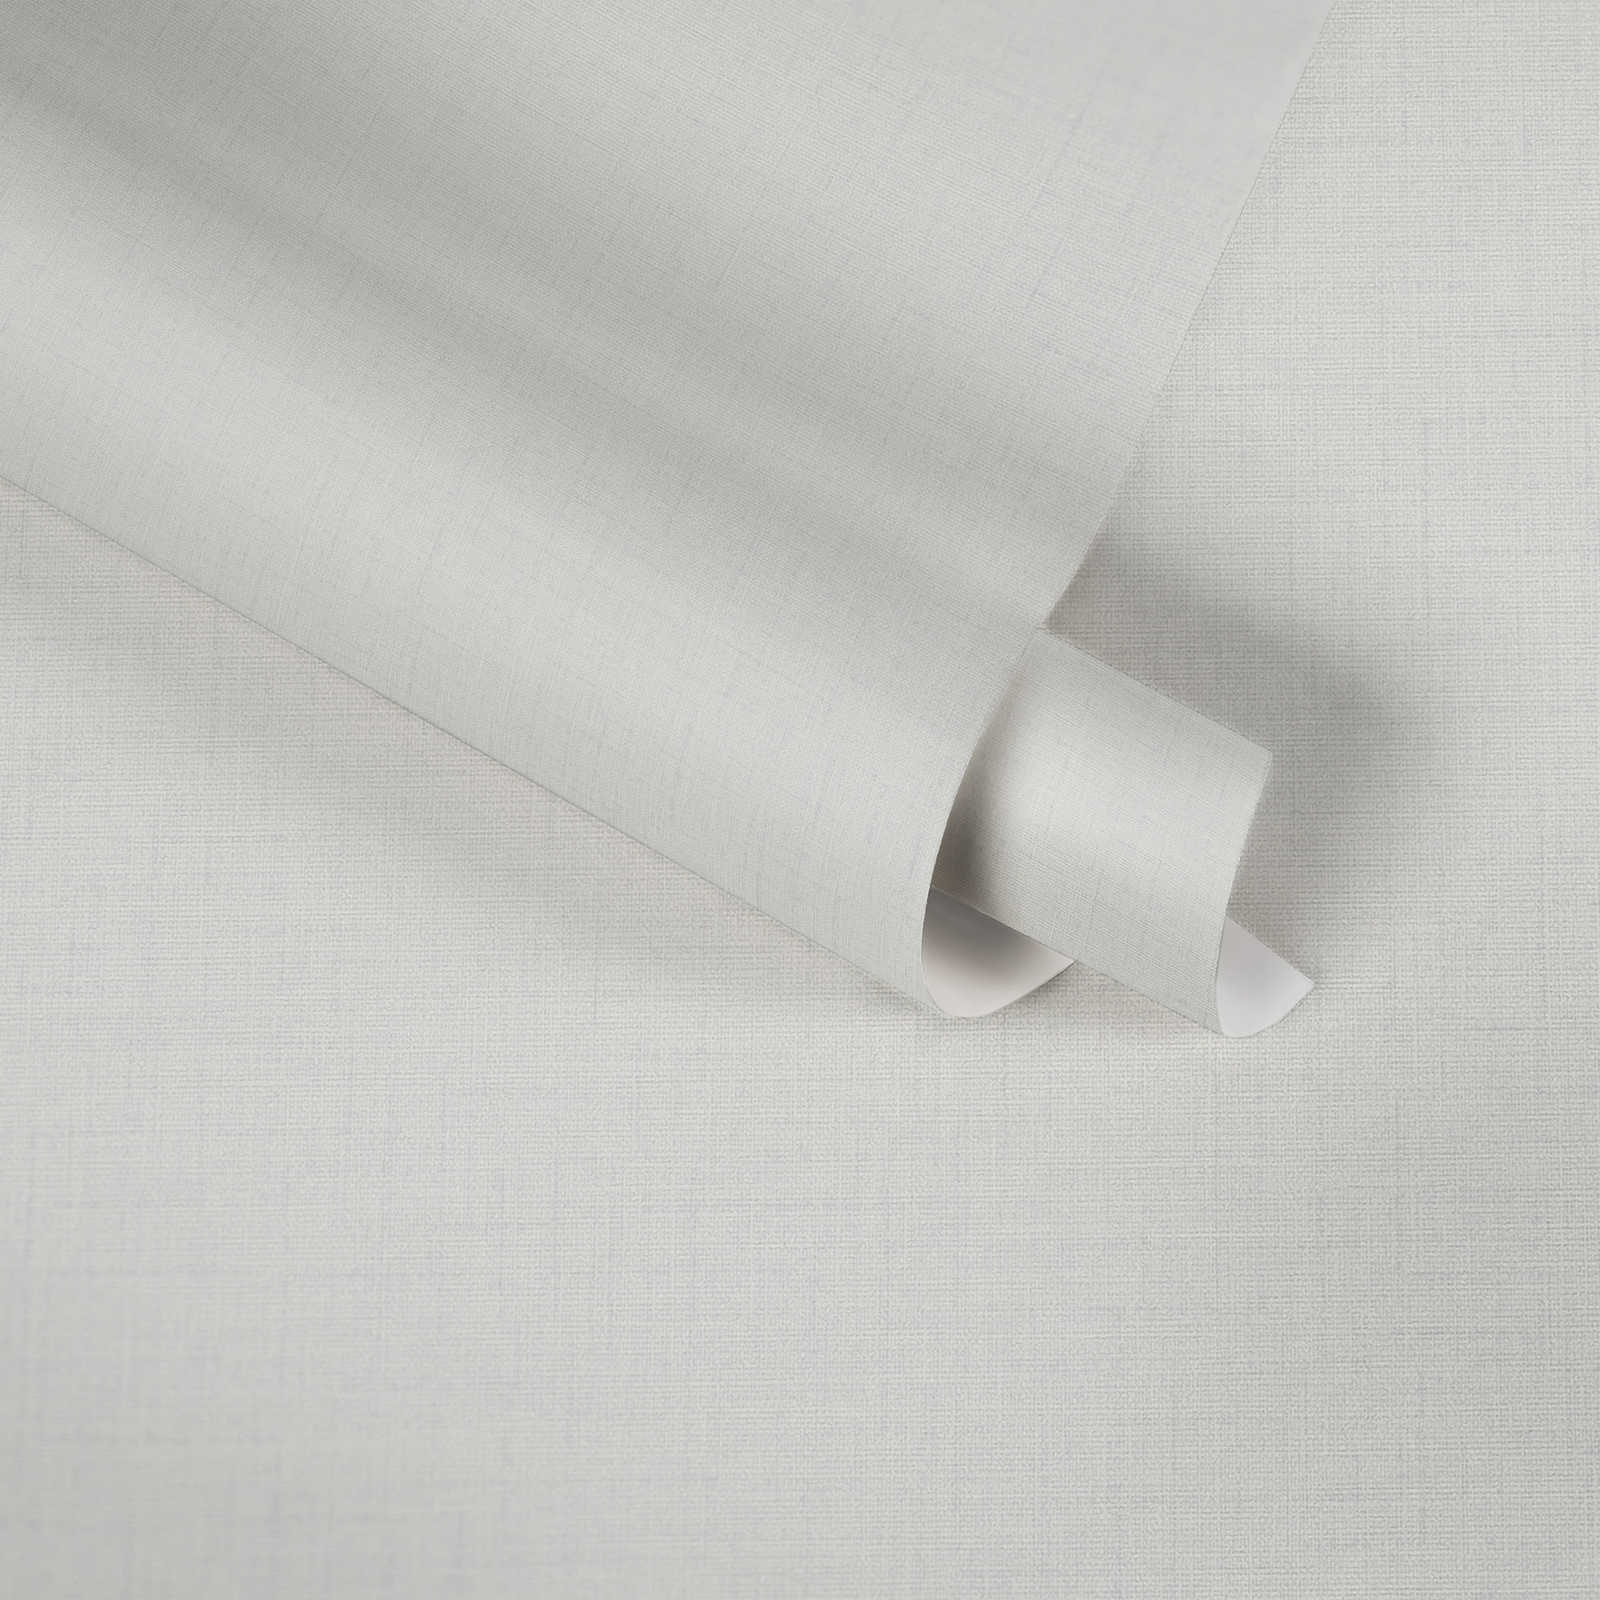             Papier peint intissé aspect lin à motifs structurés - gris, blanc
        